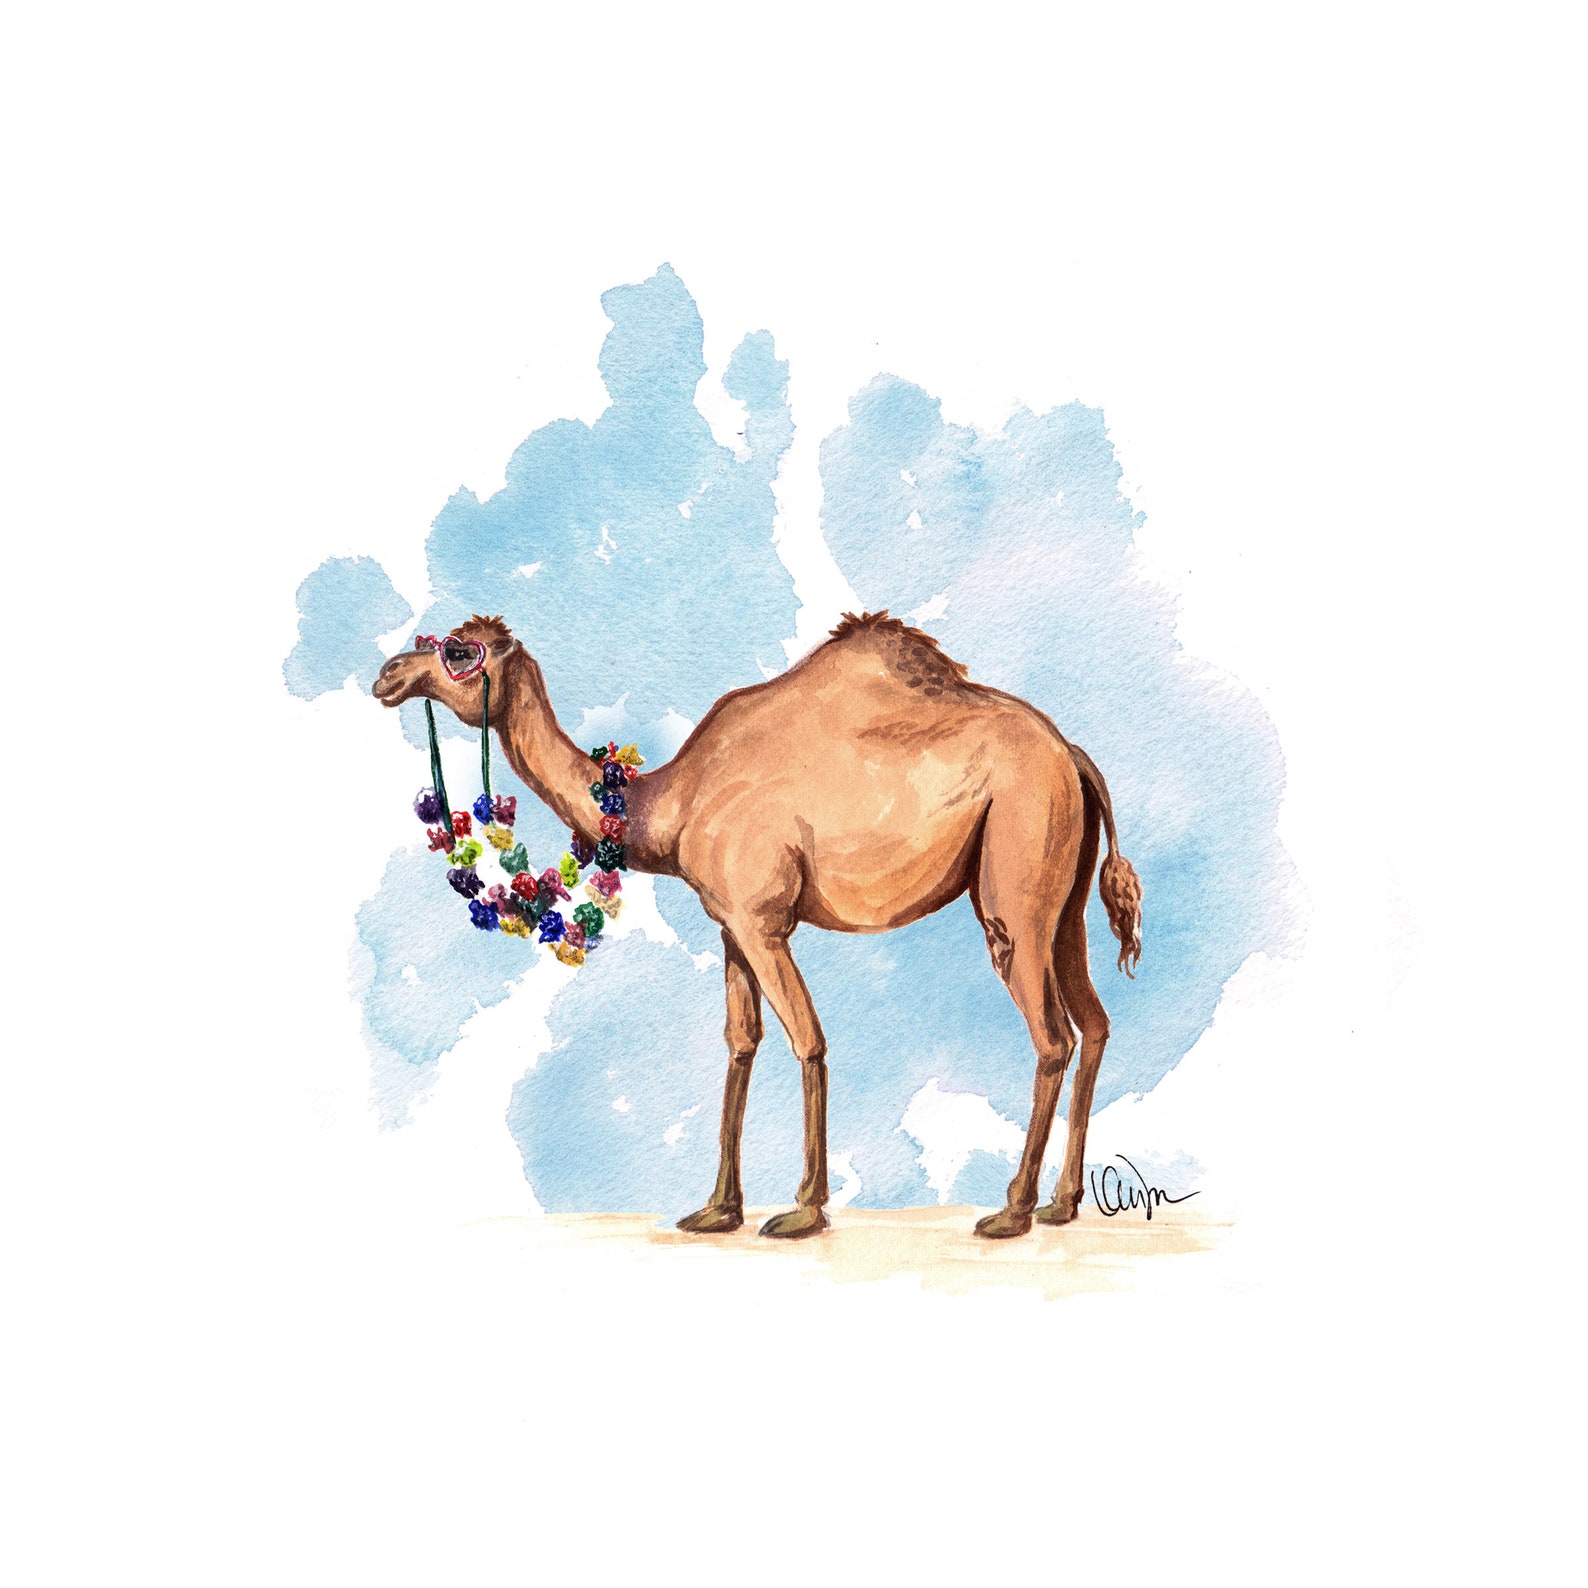 Camel illustration